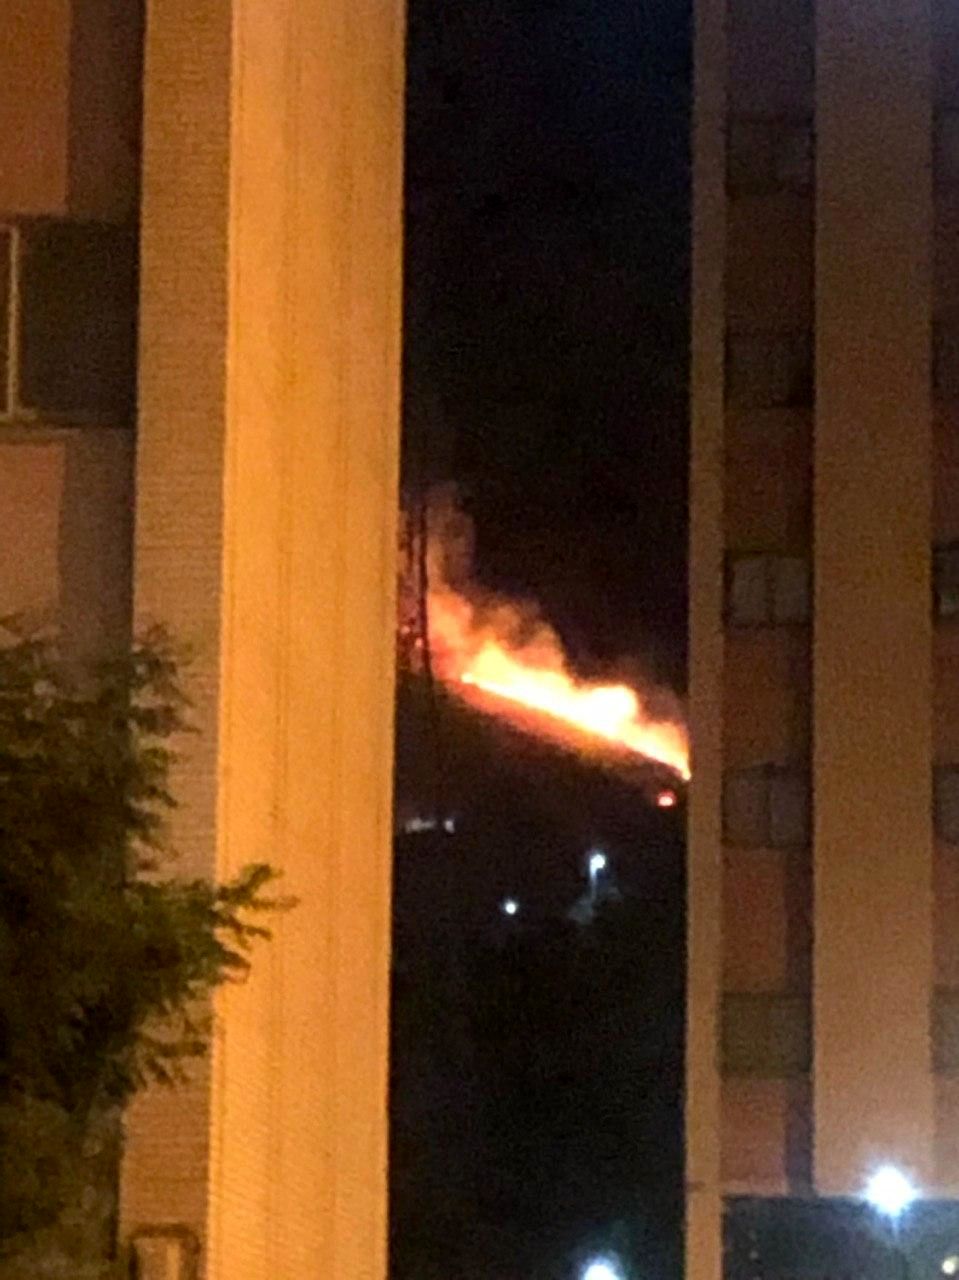 آتش سوزی سریالی در بوستان های تهران / بخشی ازچیتگر آتش گرفت 